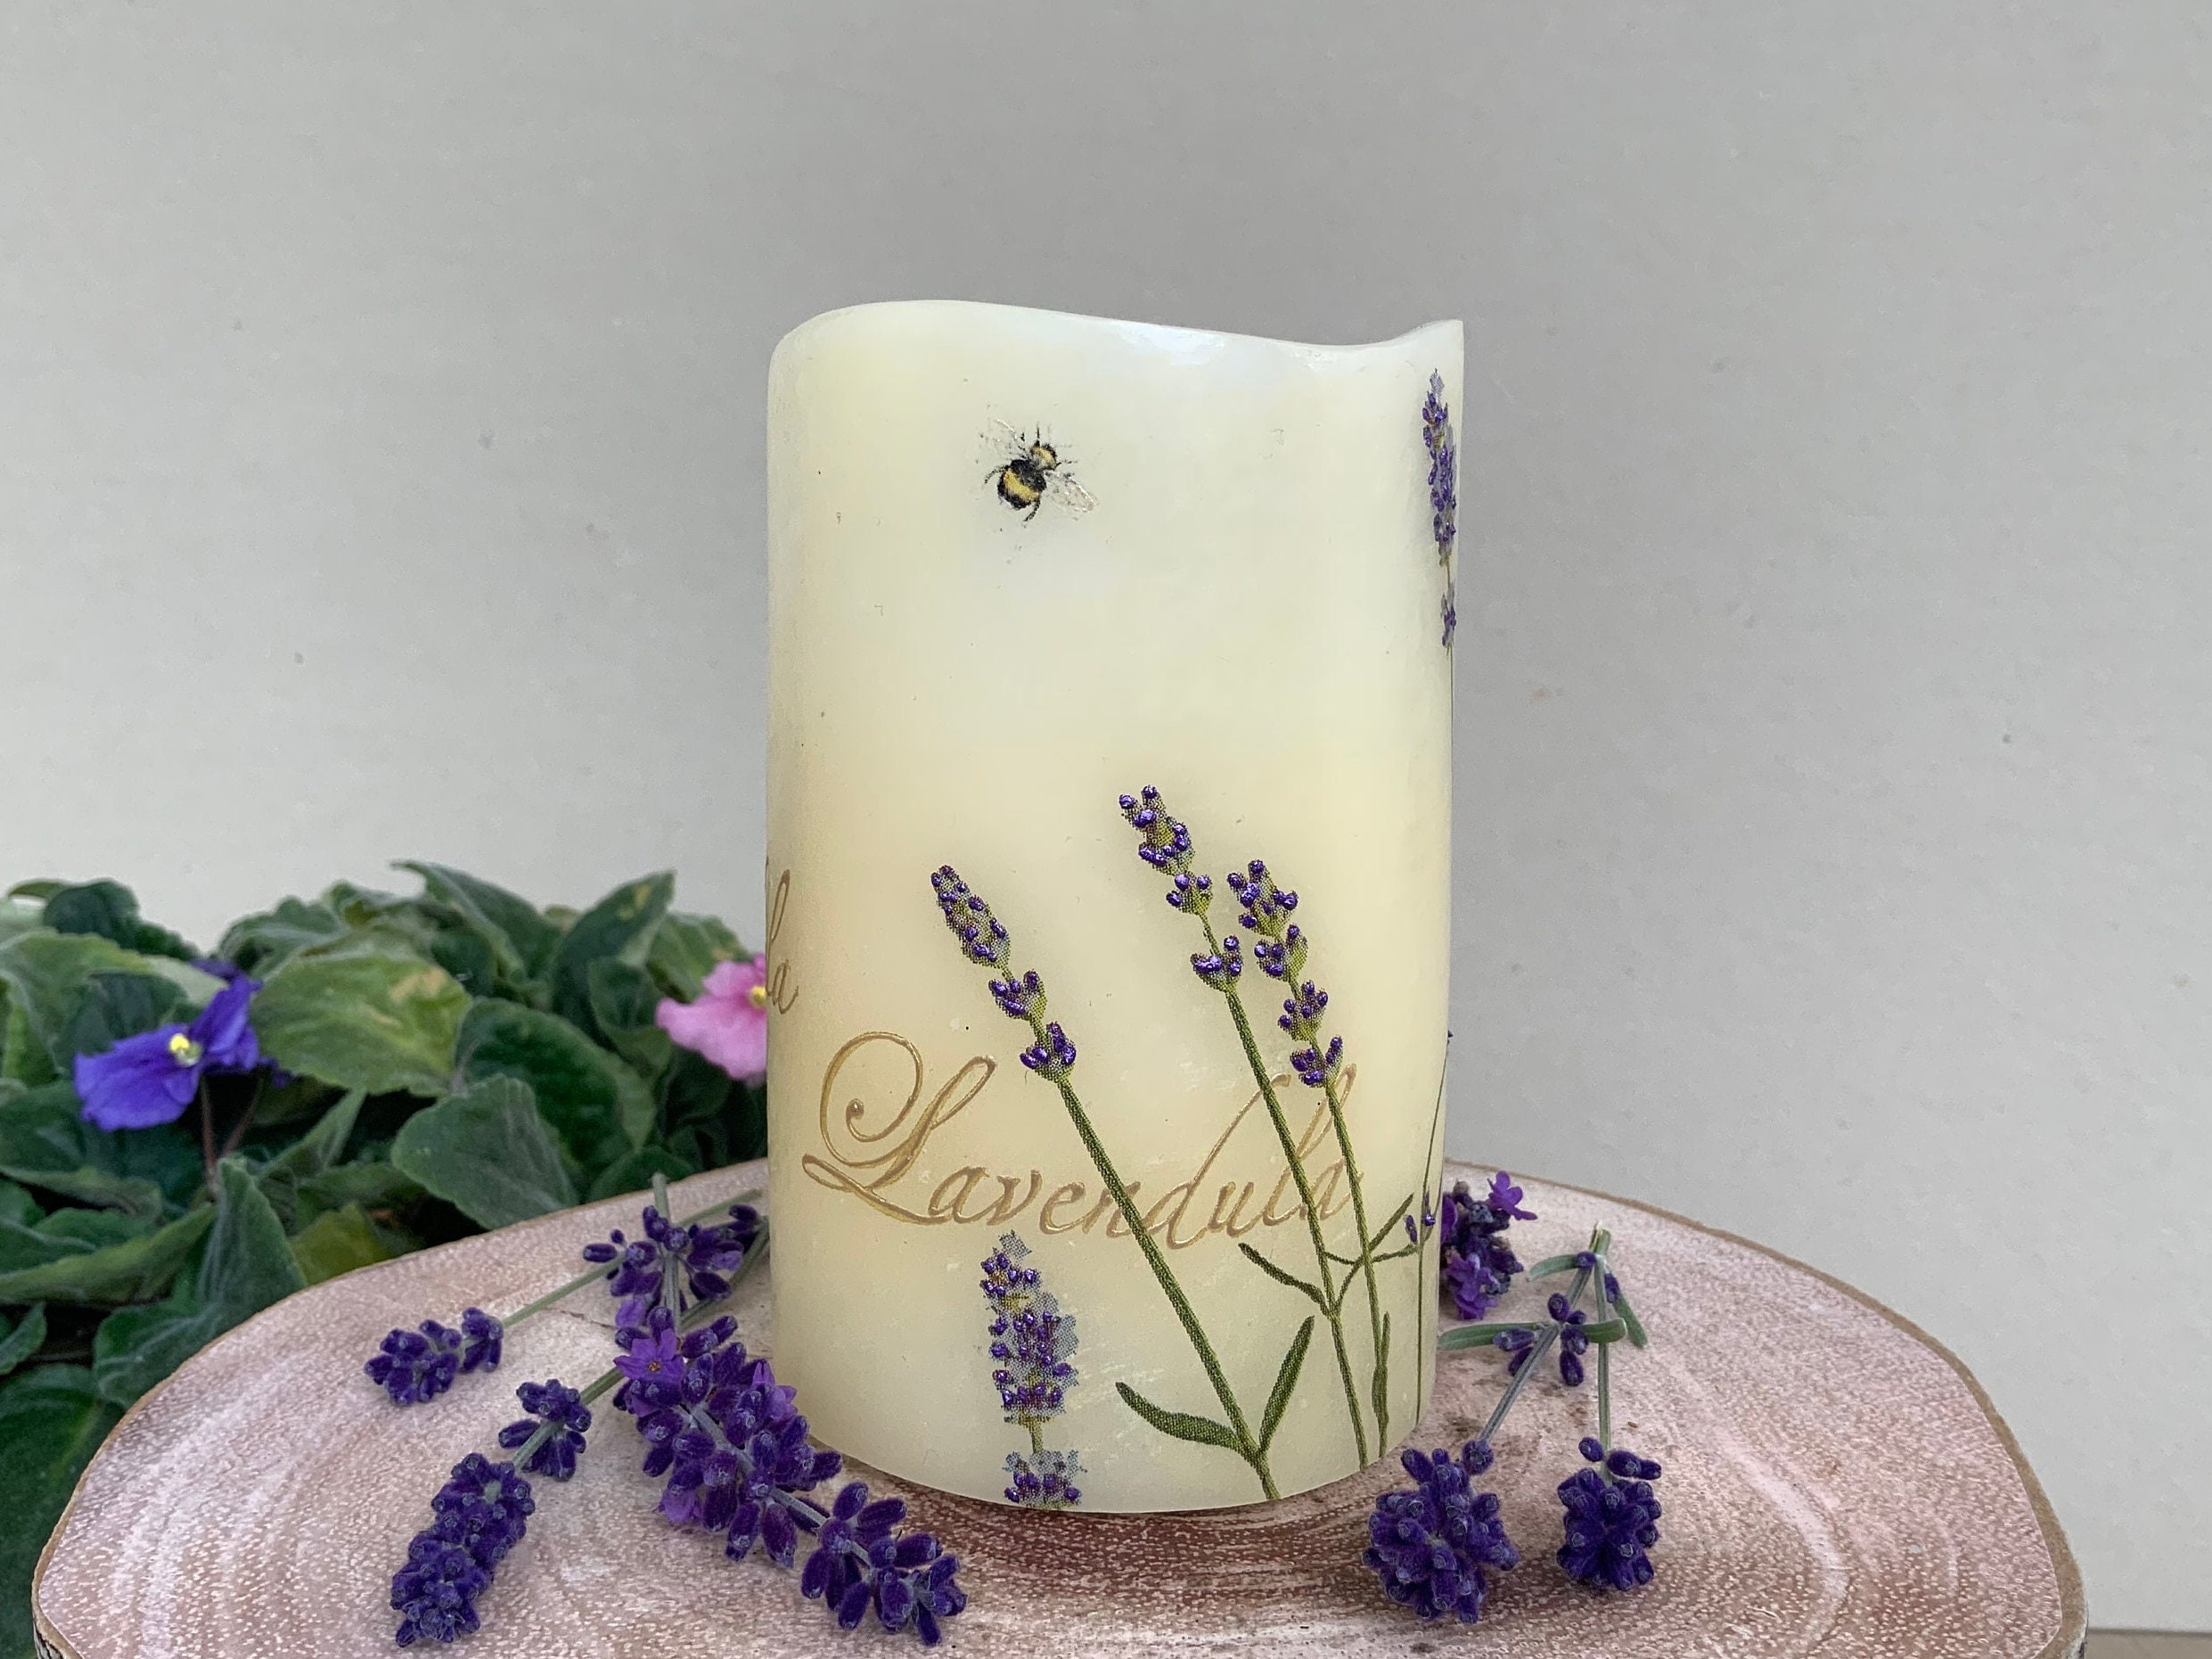 Candela LED Fiori di lavanda candela artistica floreale con dettagli 3D  dipinti a mano decorazione per la casa candele uniche decorate a mano  decoupage -  Italia